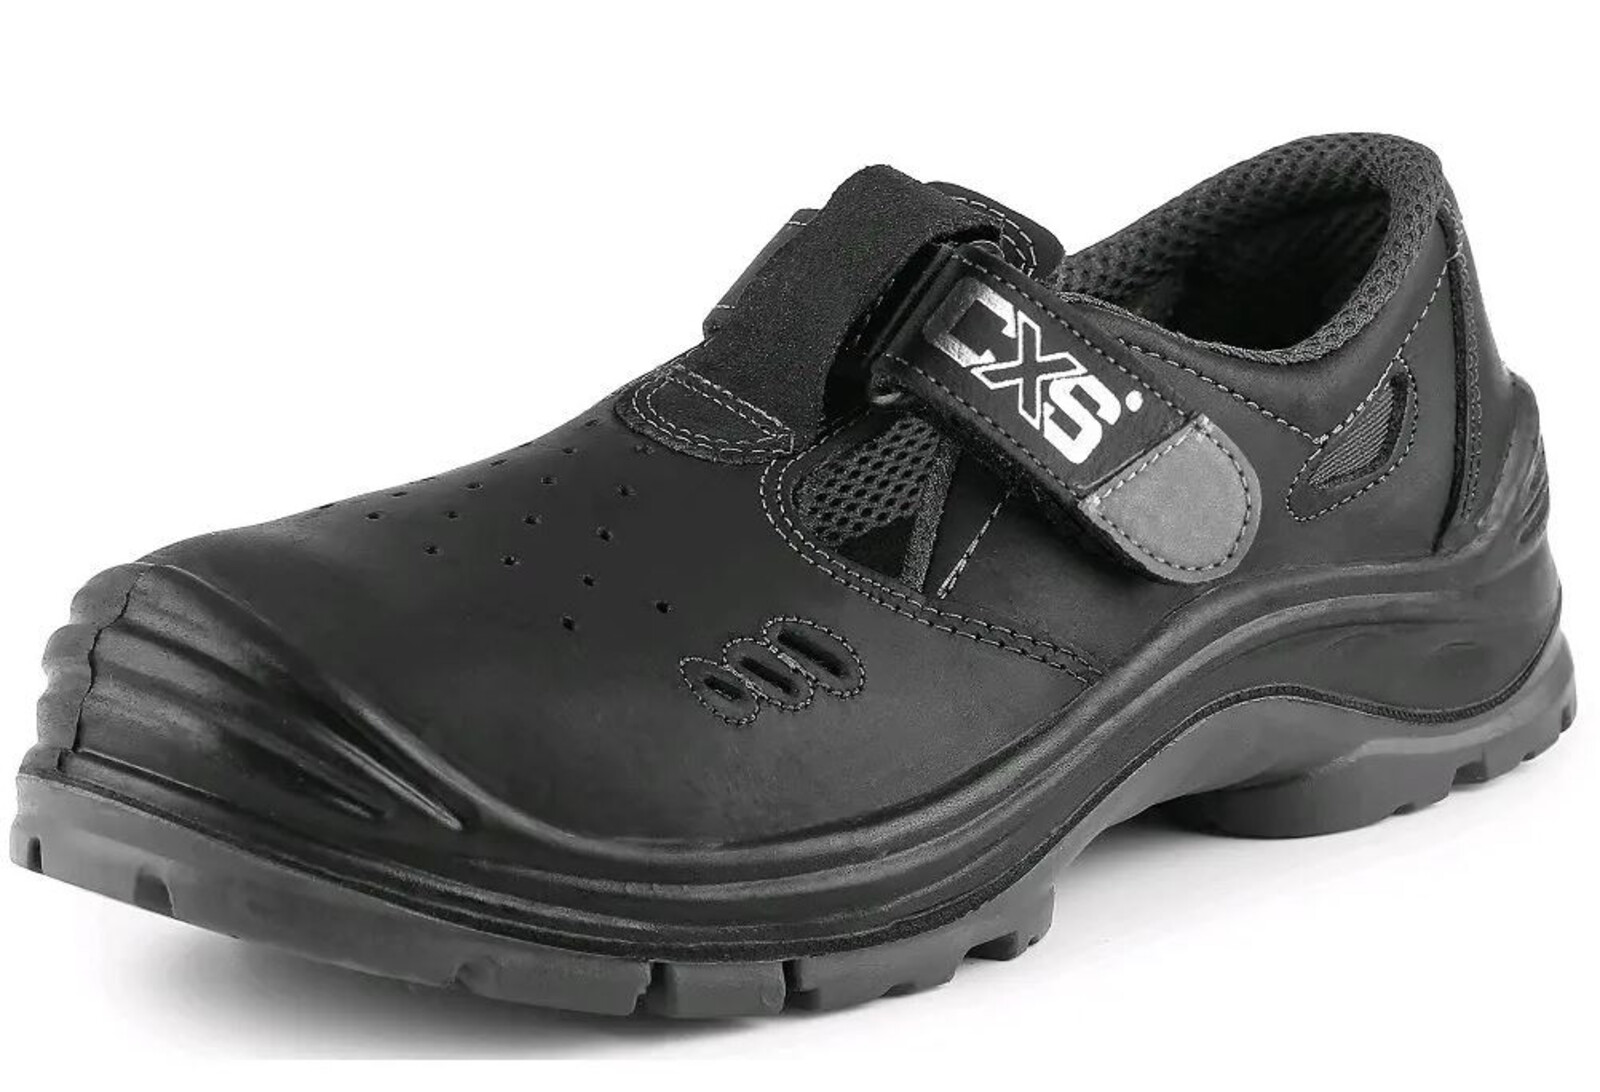 Bezpečnostné sandále CXS Safety Steel Iron S1 - veľkosť: 39, farba: čierna